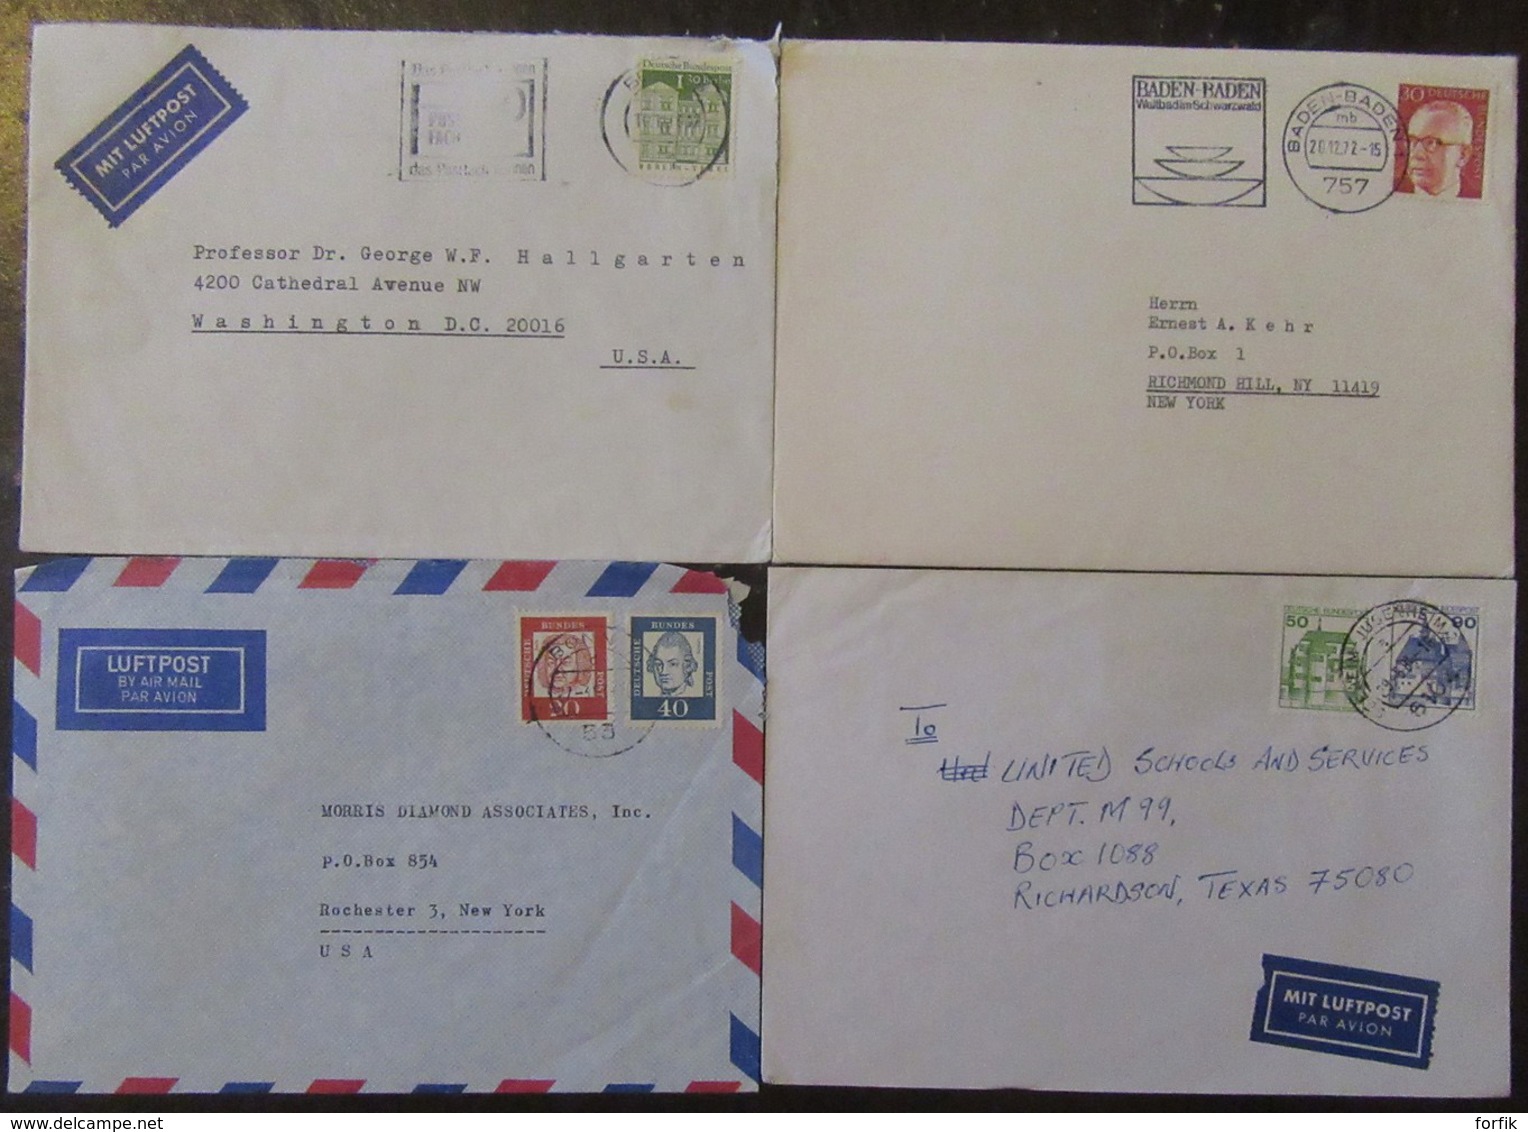 Allemagne, Autriche, Liechtenstein - Lot de 53 enveloppes timbrées vers étranger dont recommandés, à étudier